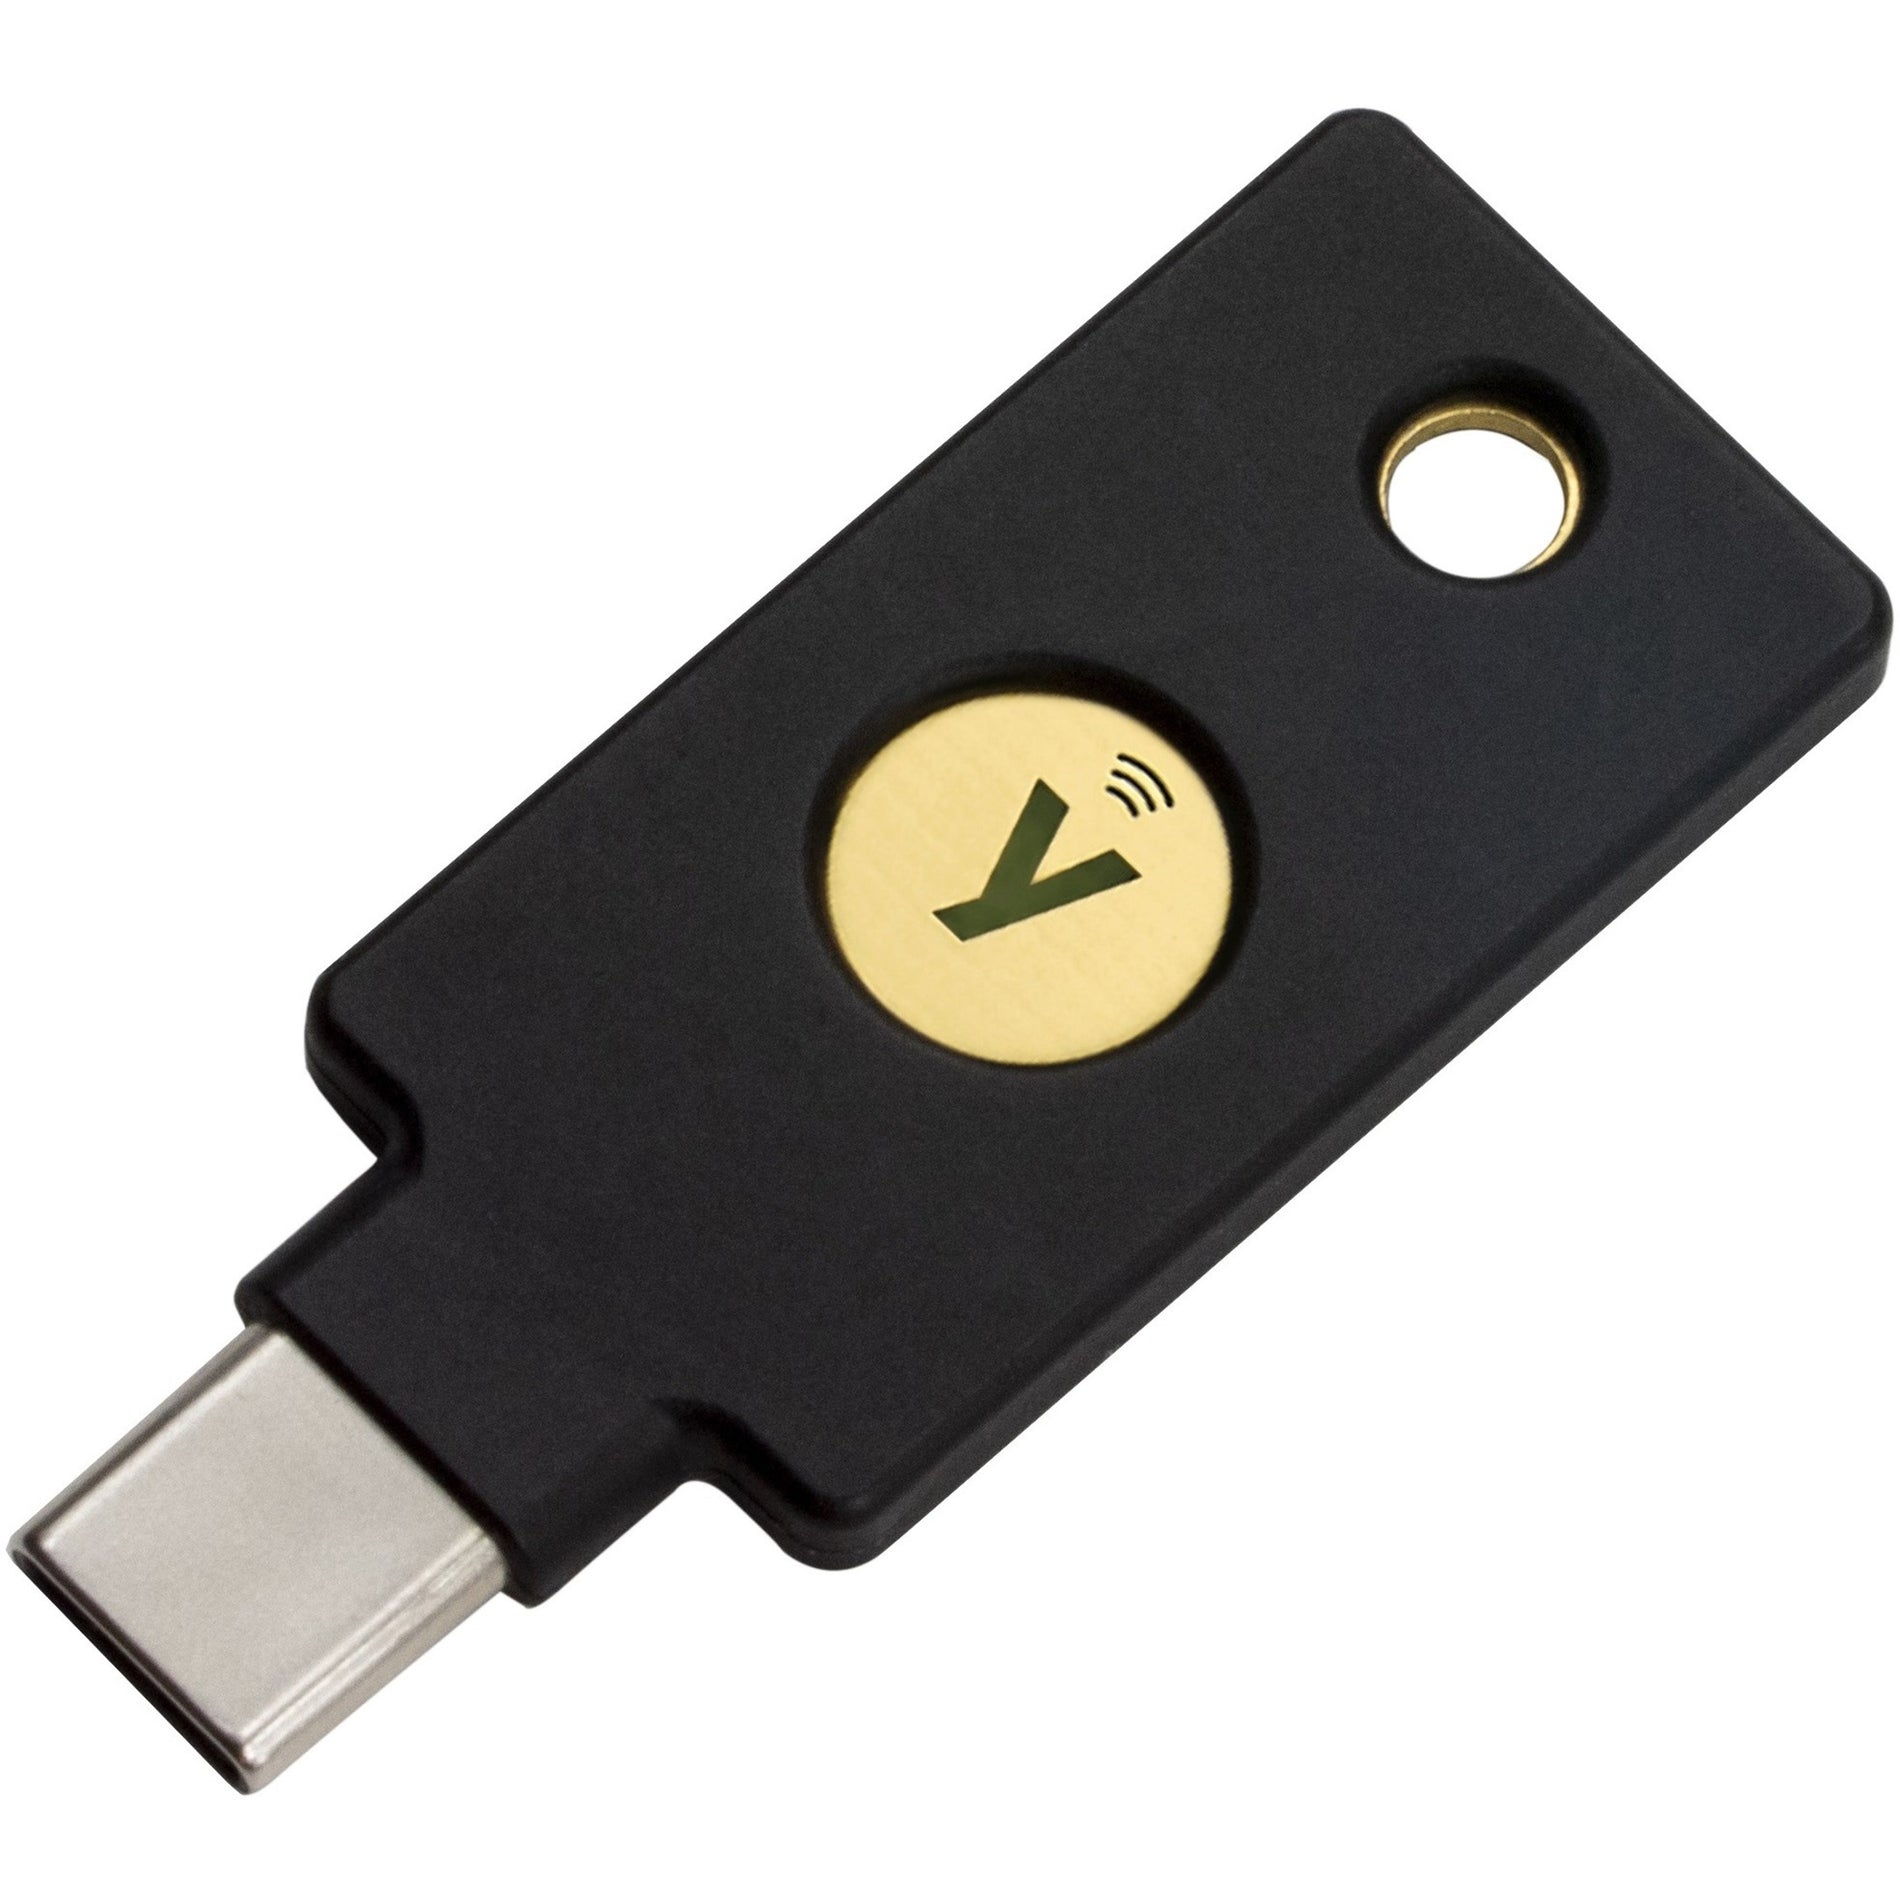 Yubico 8880001041 YubiKey 5C NFC (Blister Pack), Crush Resistant,  Passwordless